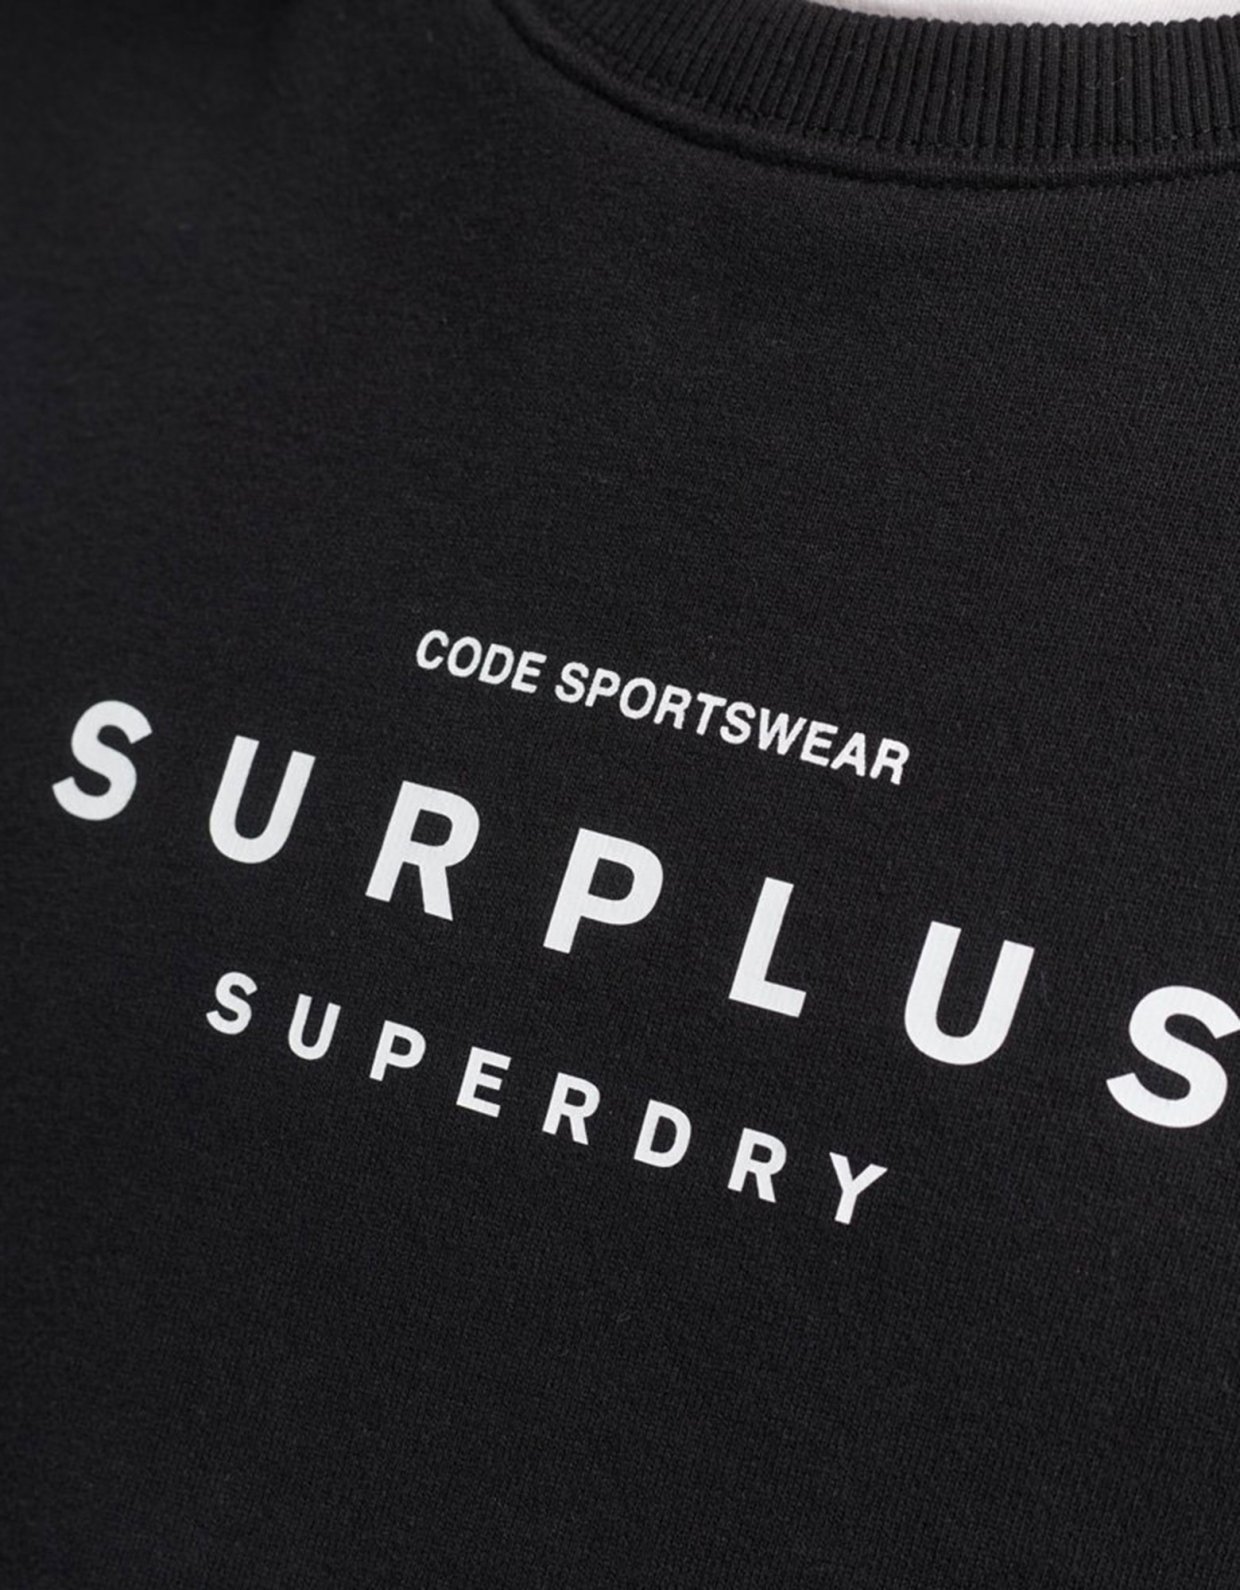 Superdry Code surplus loose crew sweatshirt black